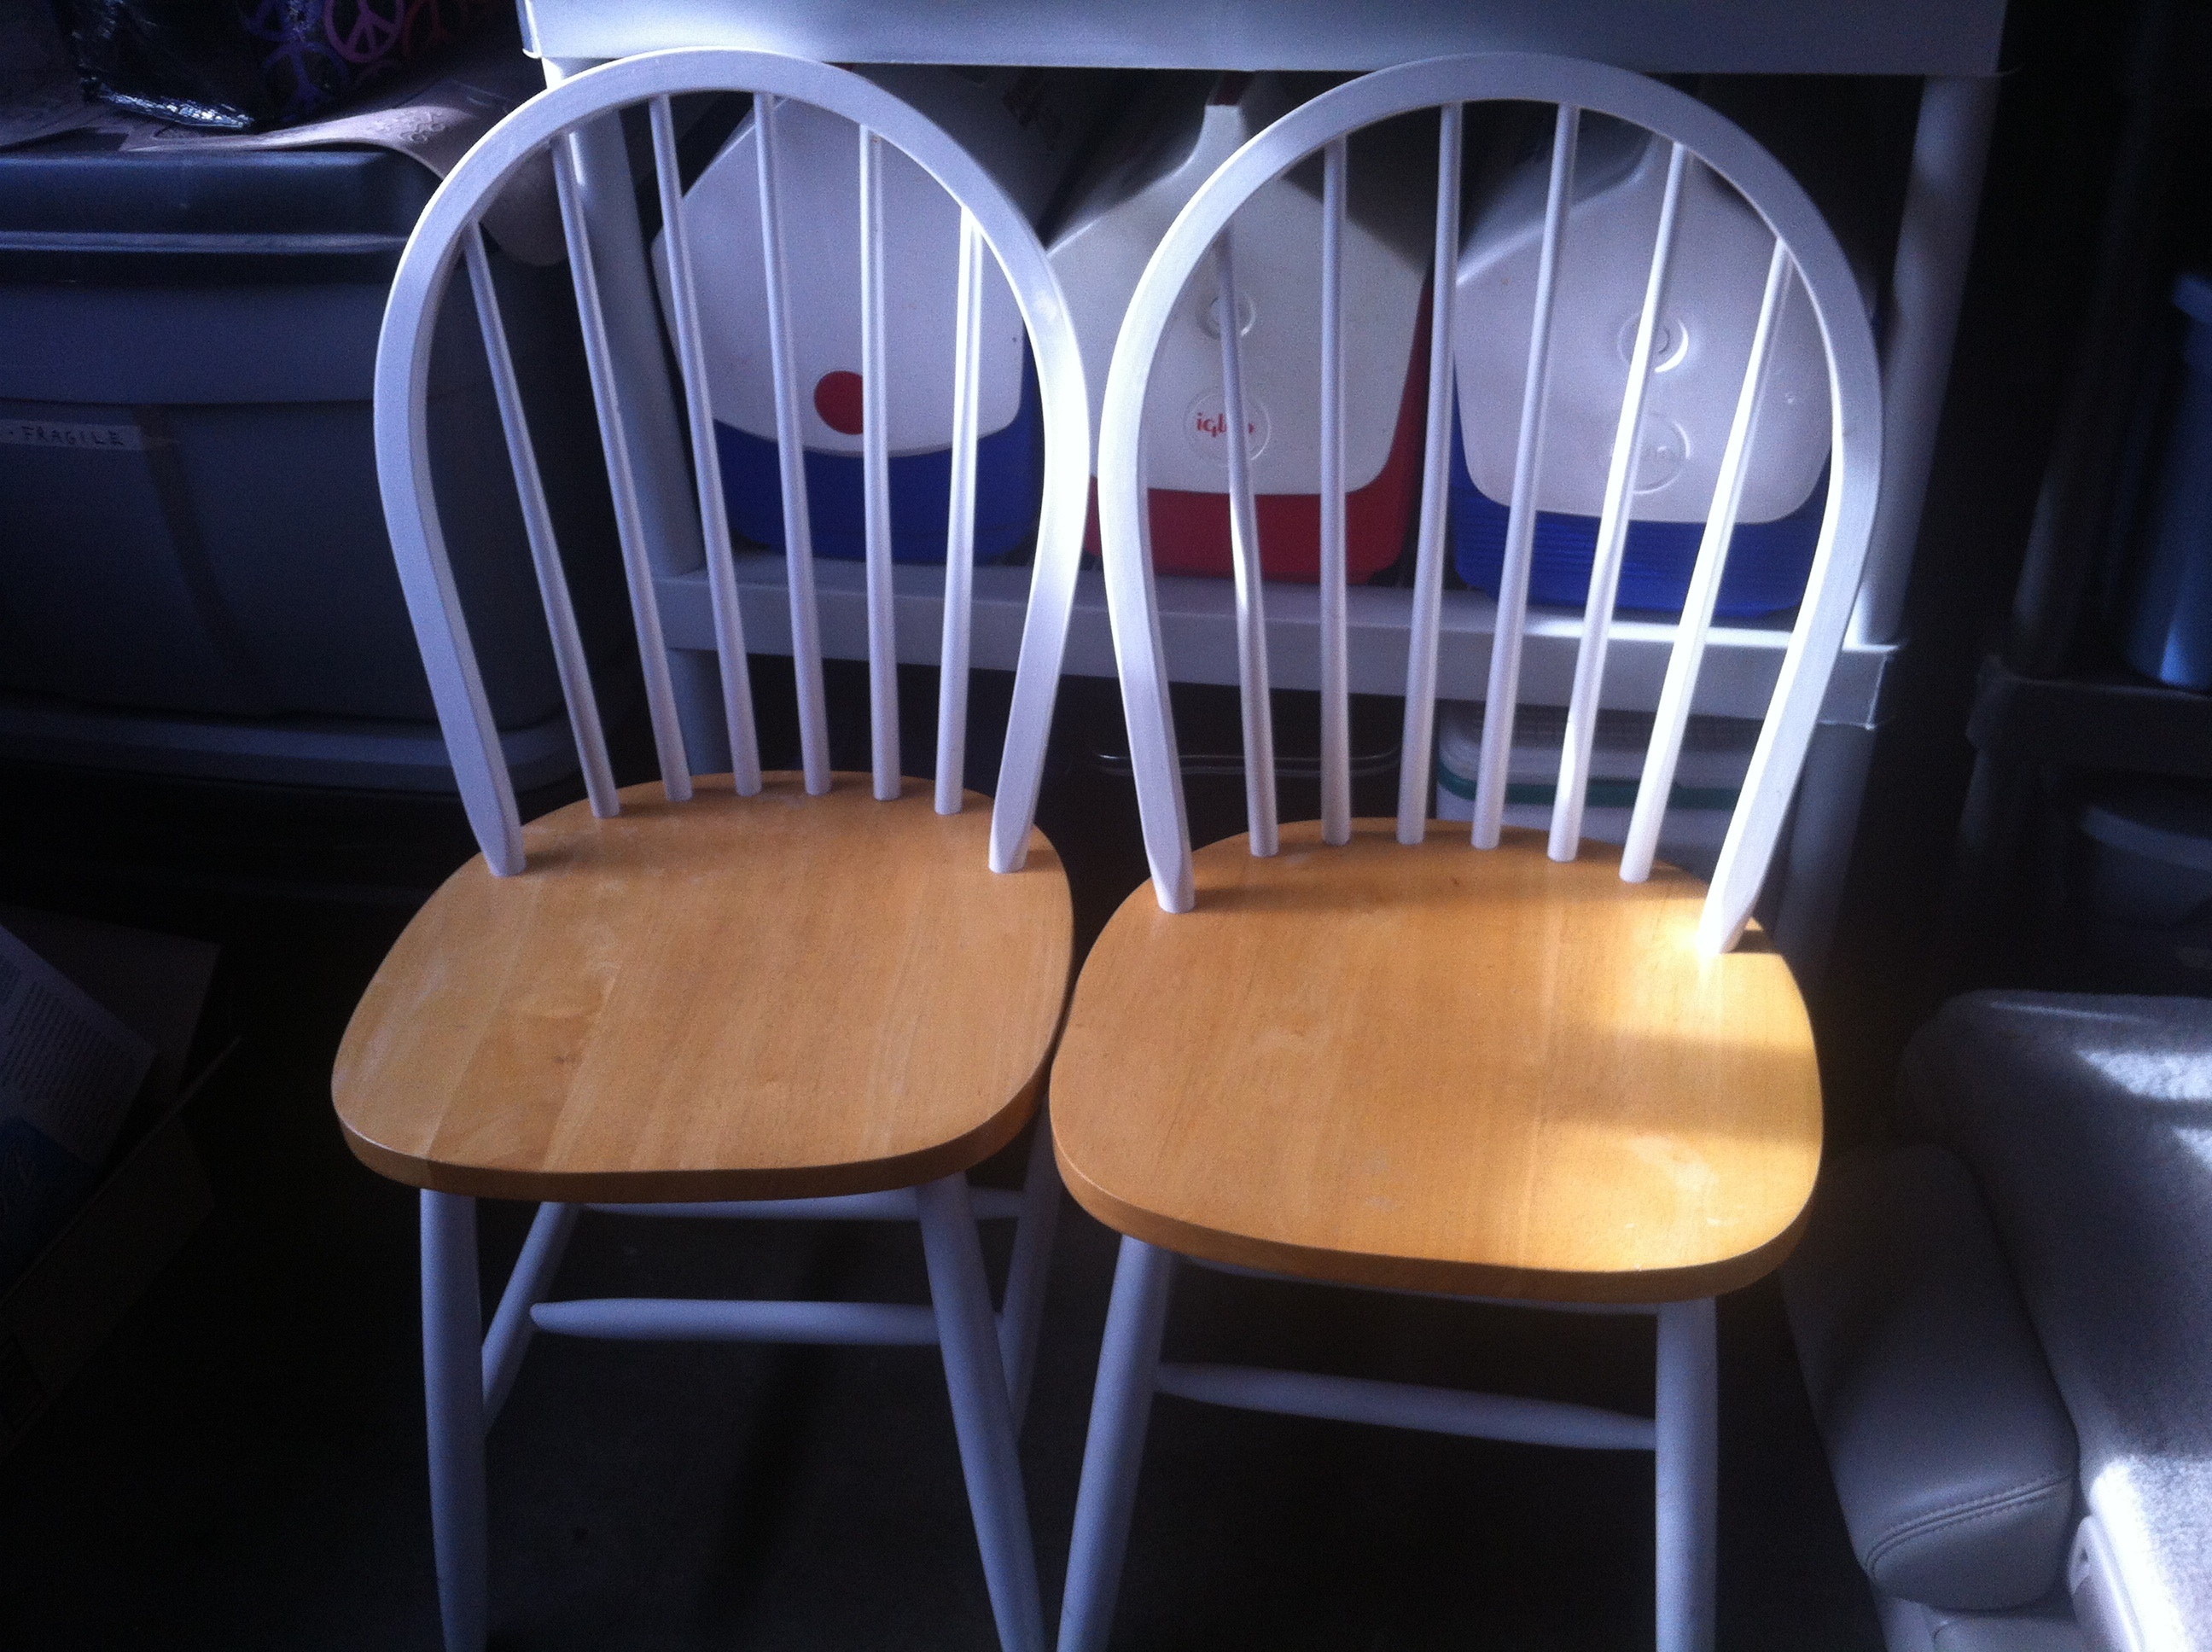 2 kitchen chairs